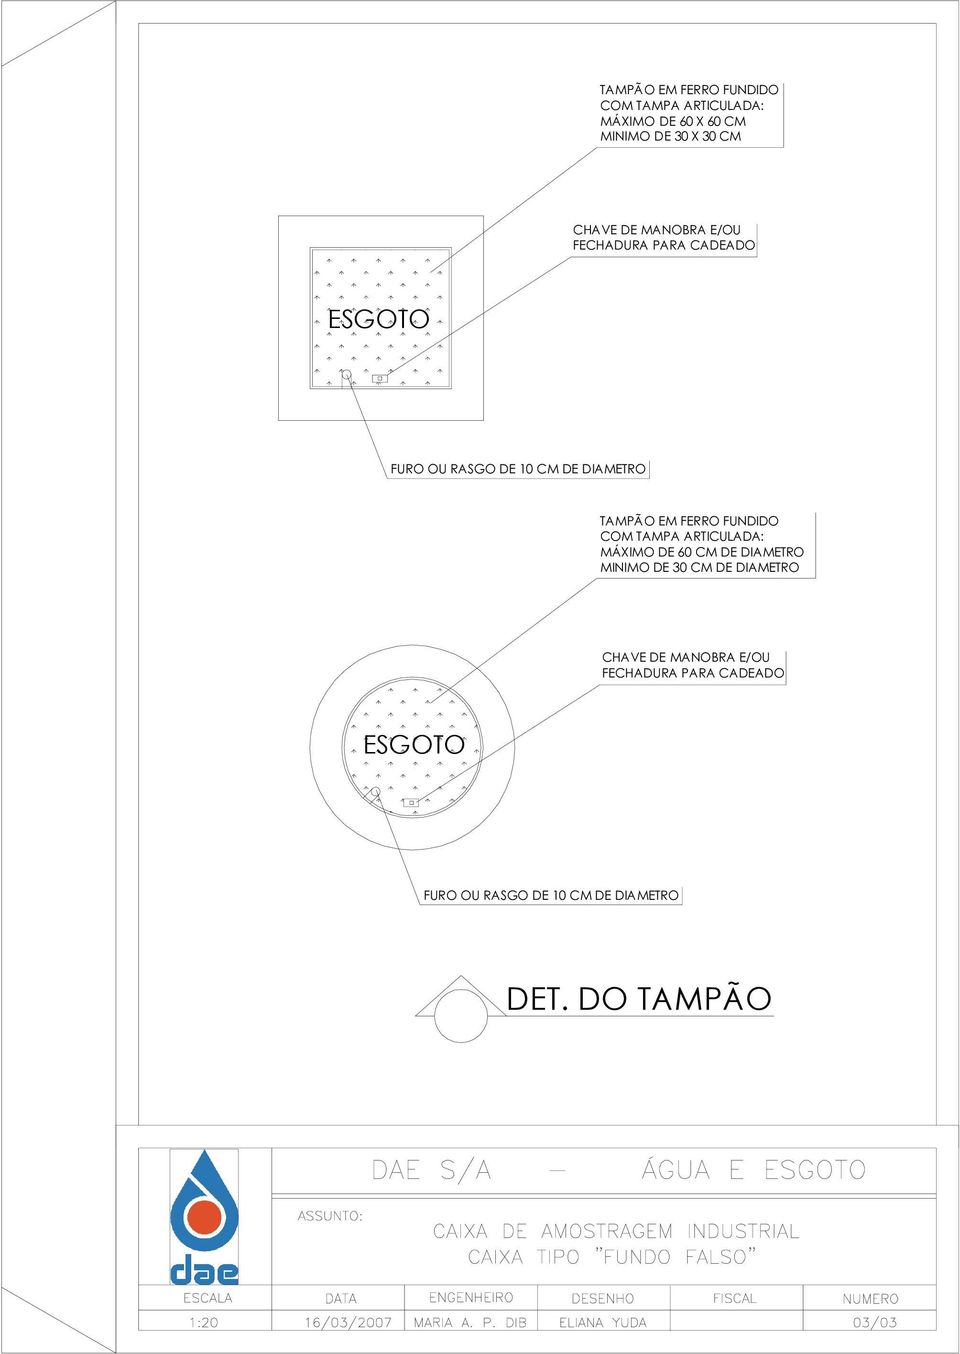 FERRO FUNDIDO COM TAMPA ARTICULADA: MÁXIMO DE 60 CM DE DIAMETRO MINIMO DE 30 CM DE DIAMETRO